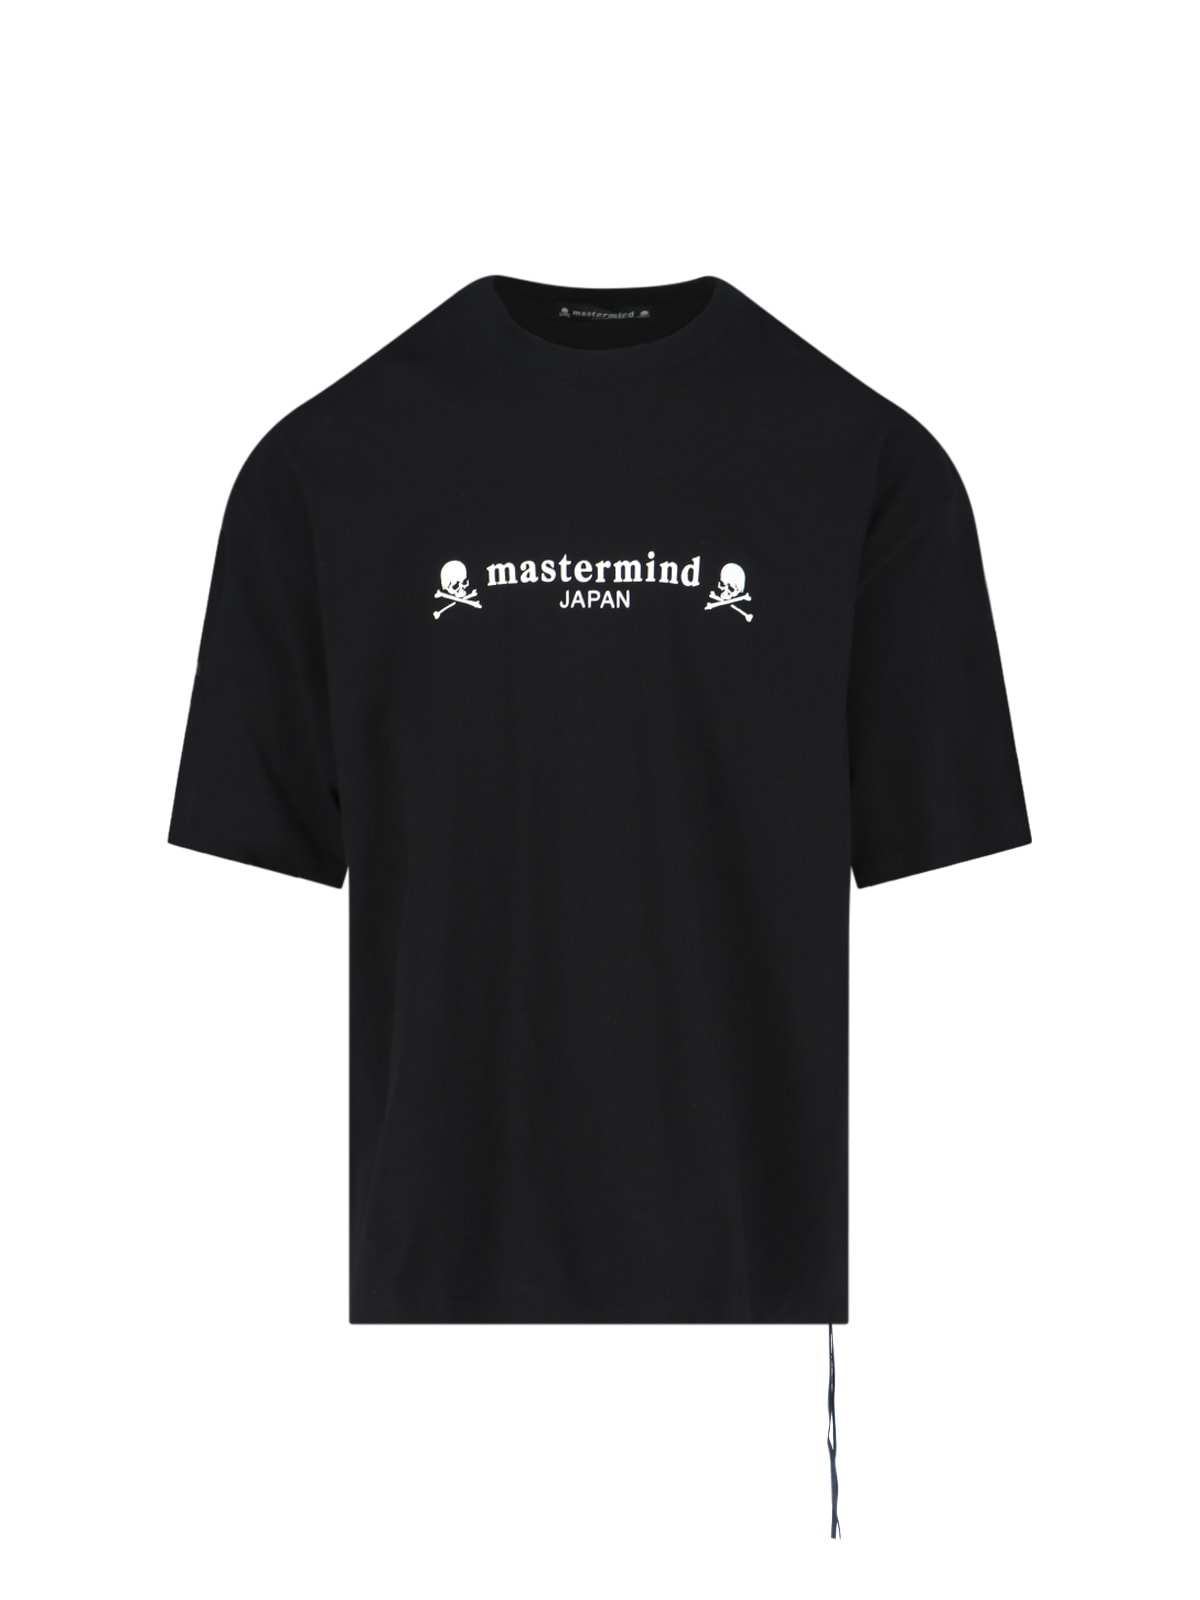 Mastermind Japan T-Shirt